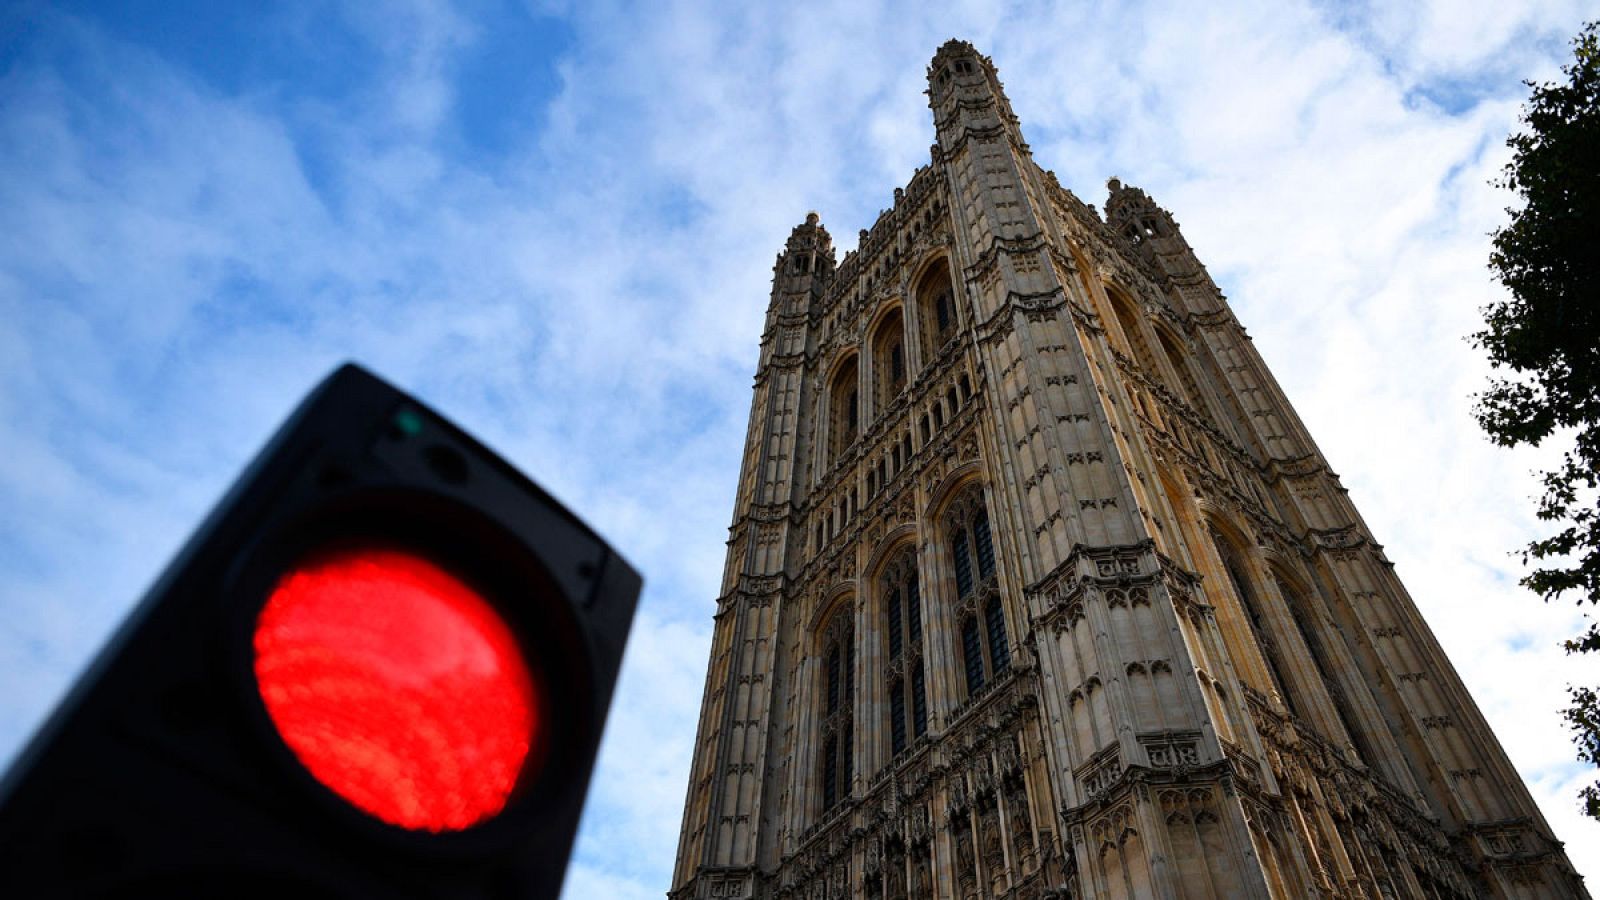 Semáforo rojo delante de la torre del parlamento británico.